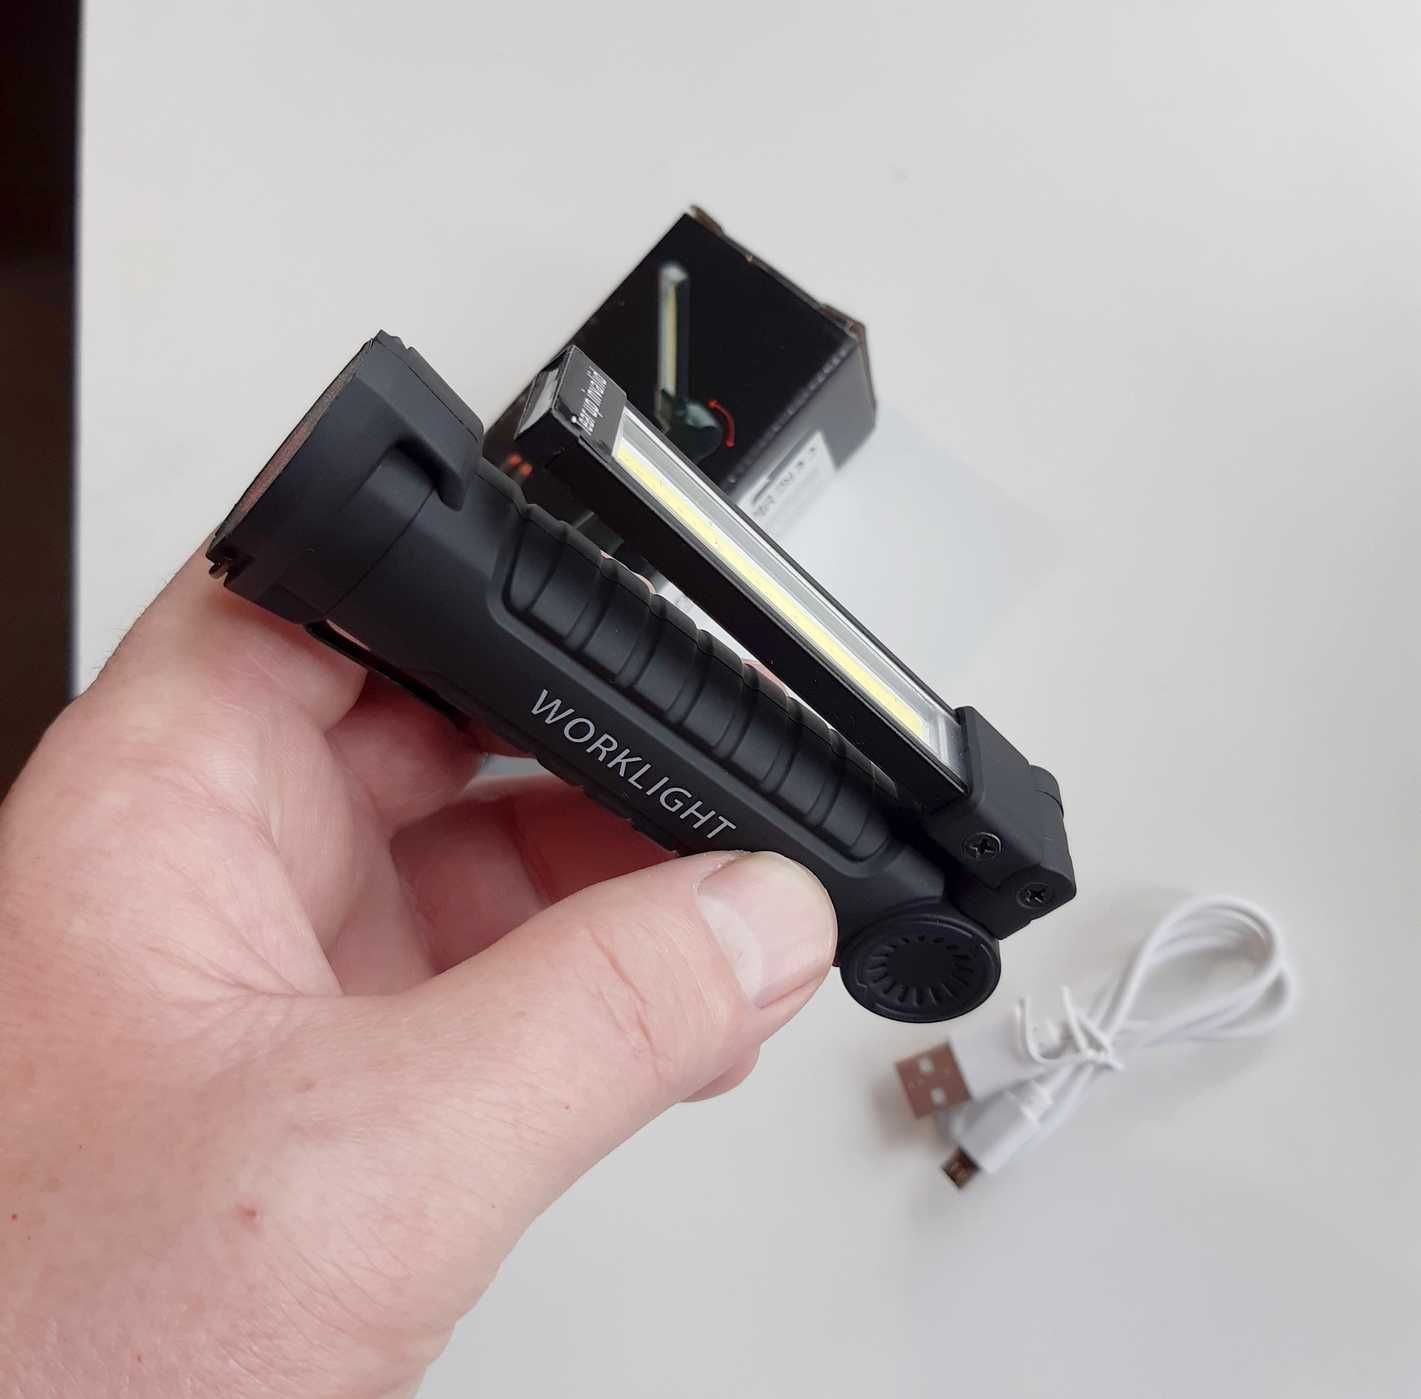 LED latarka akumulator ładowanie USB pięć trybów pracy odporna deszcz